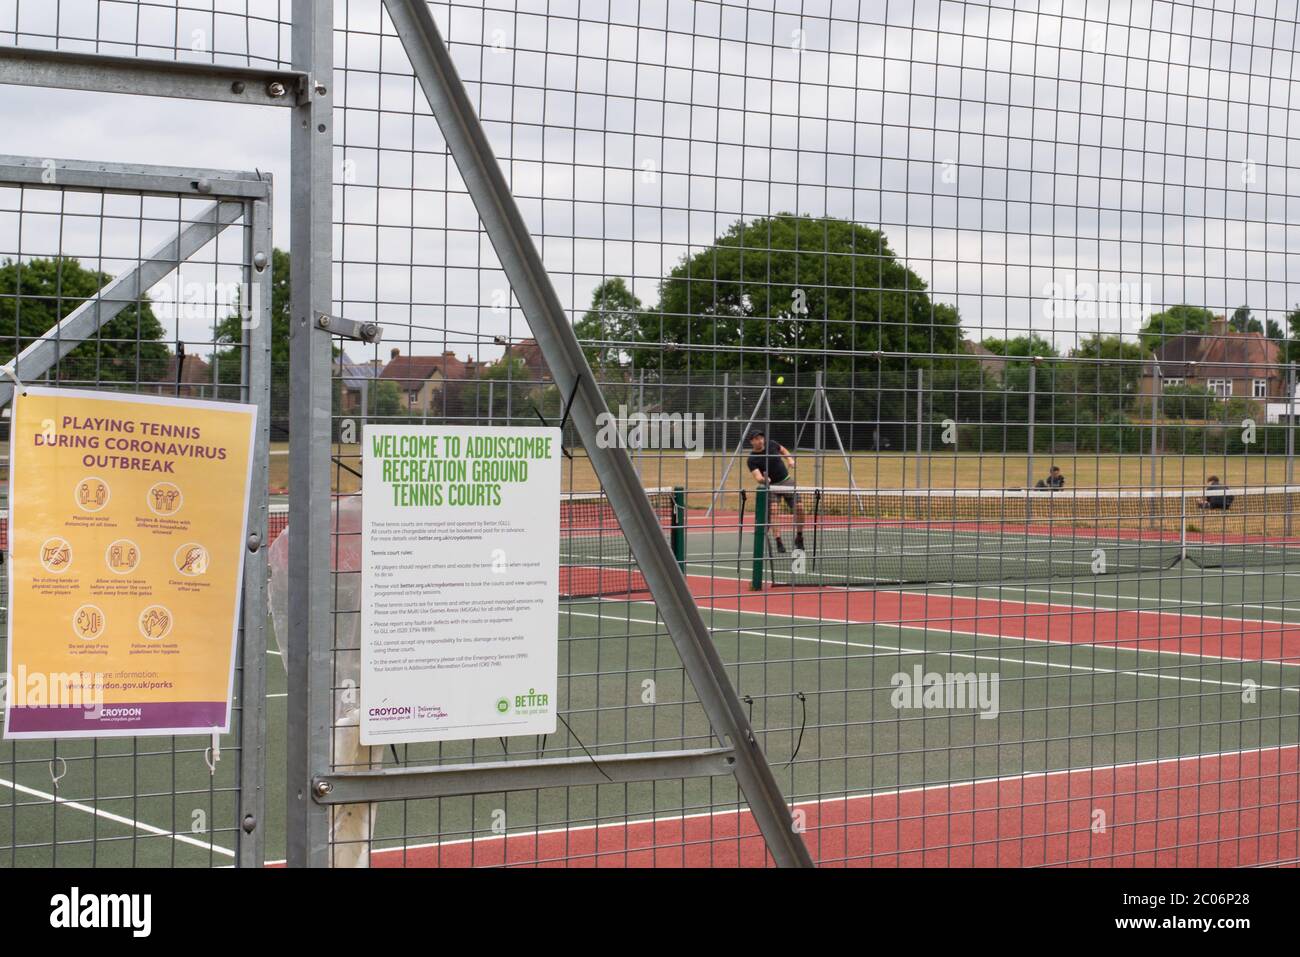 Ein Tennisplatz mit sozialer Distanzierung, da die Maßnahmen zur Aussperrung während der Coronavirus-Pandemie von 2020 gelockert werden Stockfoto